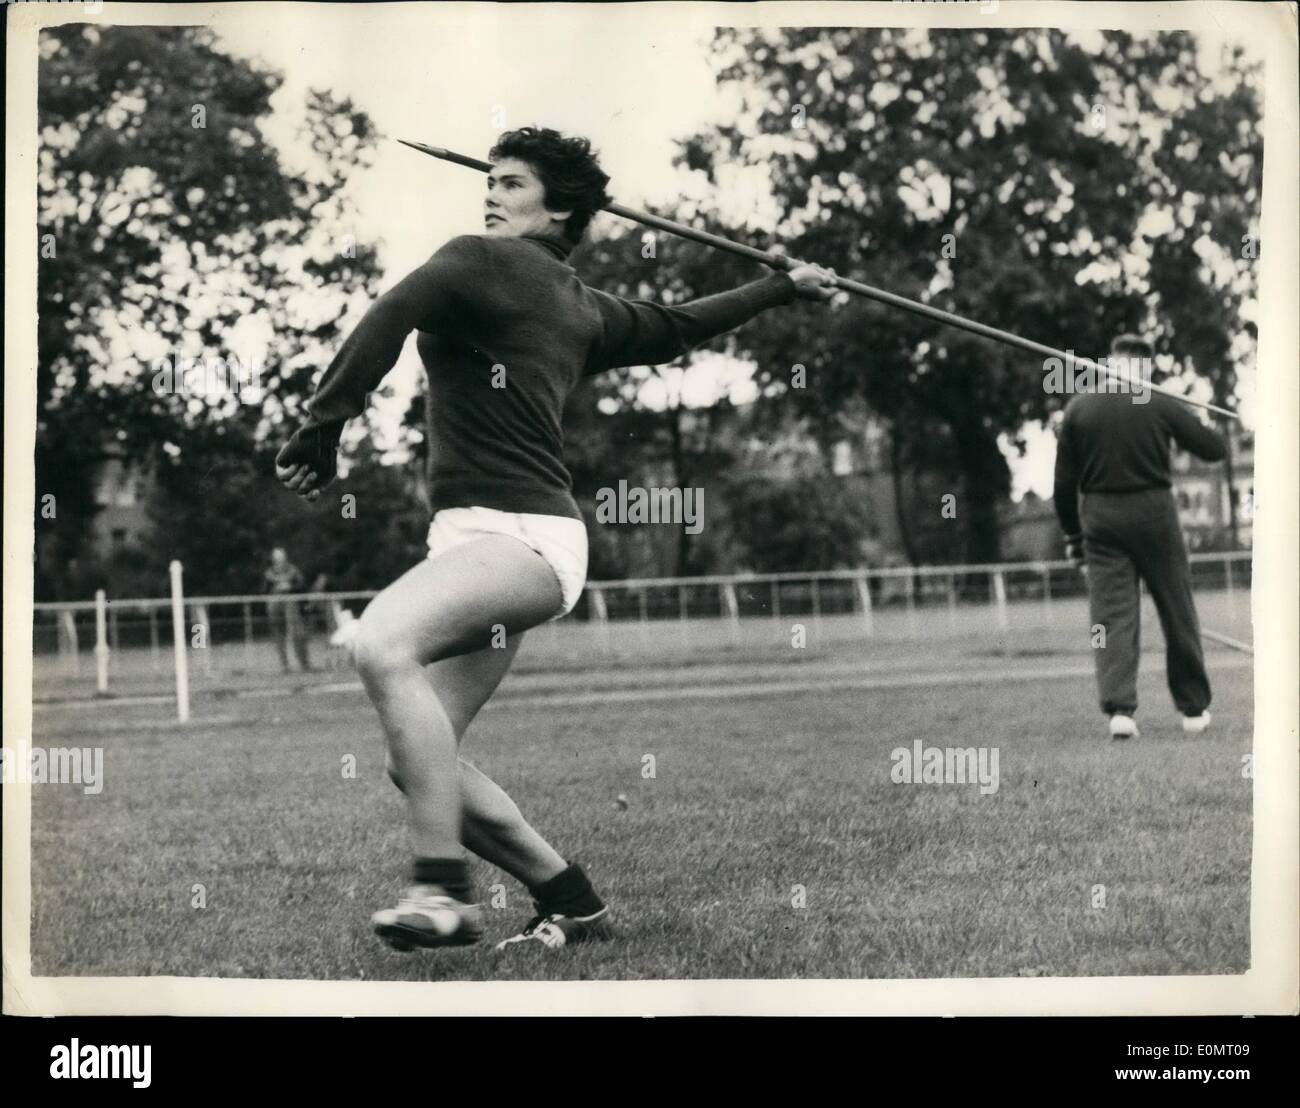 08 août, 1956 - athlètes soviétiques dans la formation - à Buenos Aires. Javelin Event : membres de l'équipe d'athlétisme qui concurrence soviétique Banque D'Images